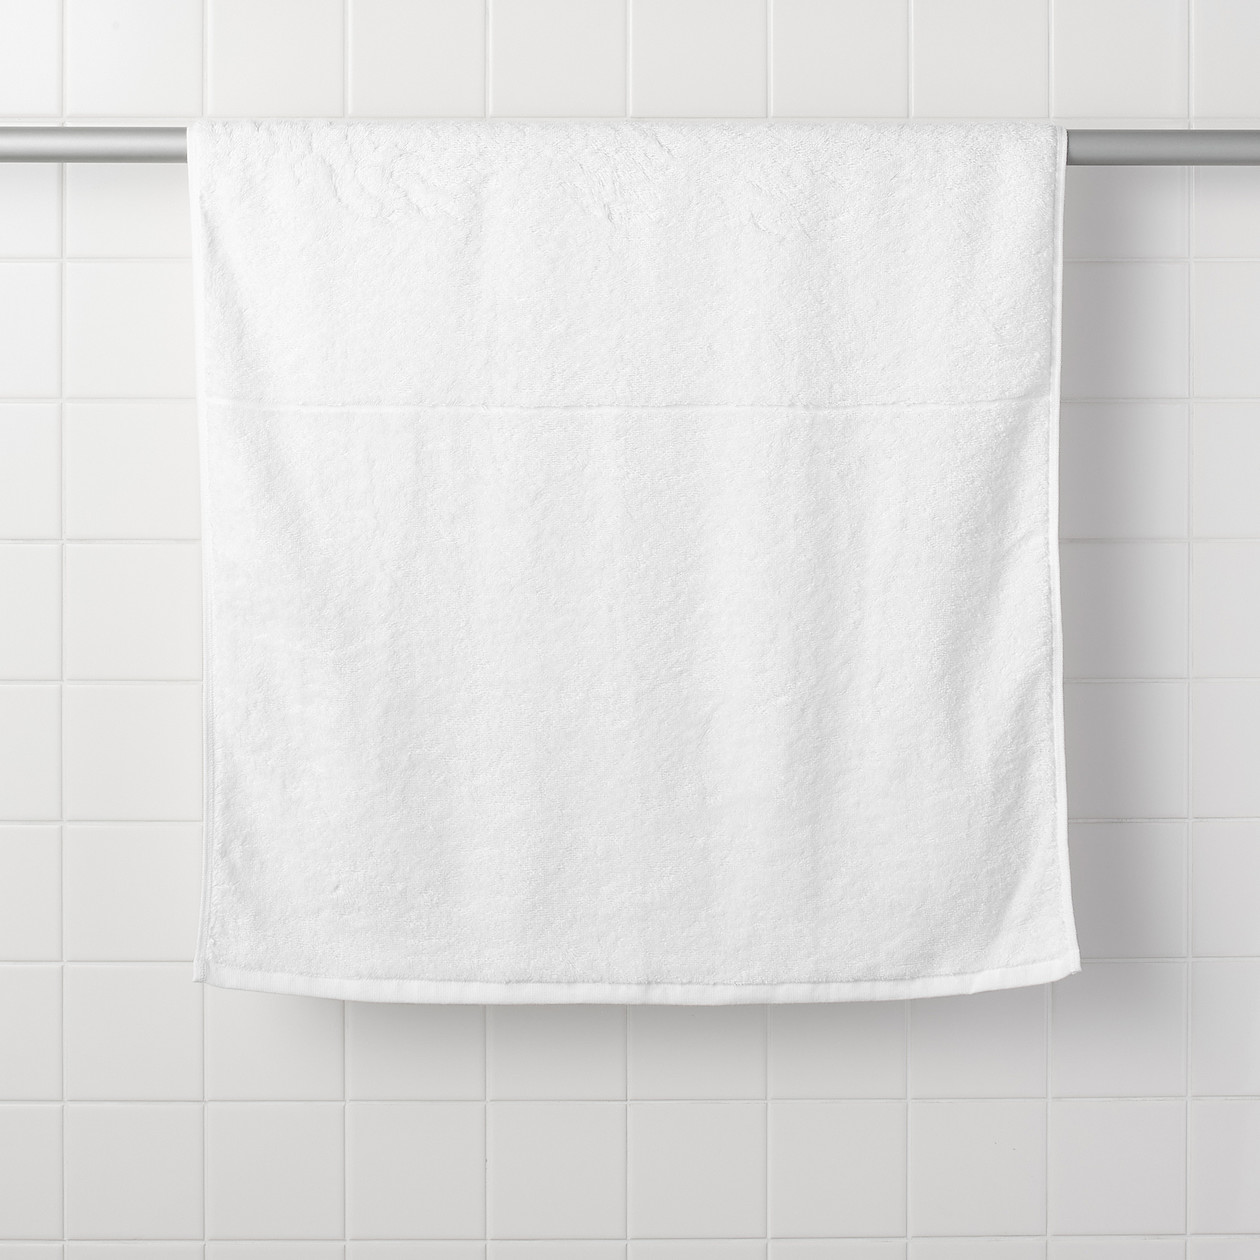 มูจิ ผ้าขนหนูผ้าฝ้ายออร์แกนิก - MUJI Cotton Pile Towel สี สีเทาอ่อน สี สีเทาอ่อนsize Bath Towel 70x140 CM